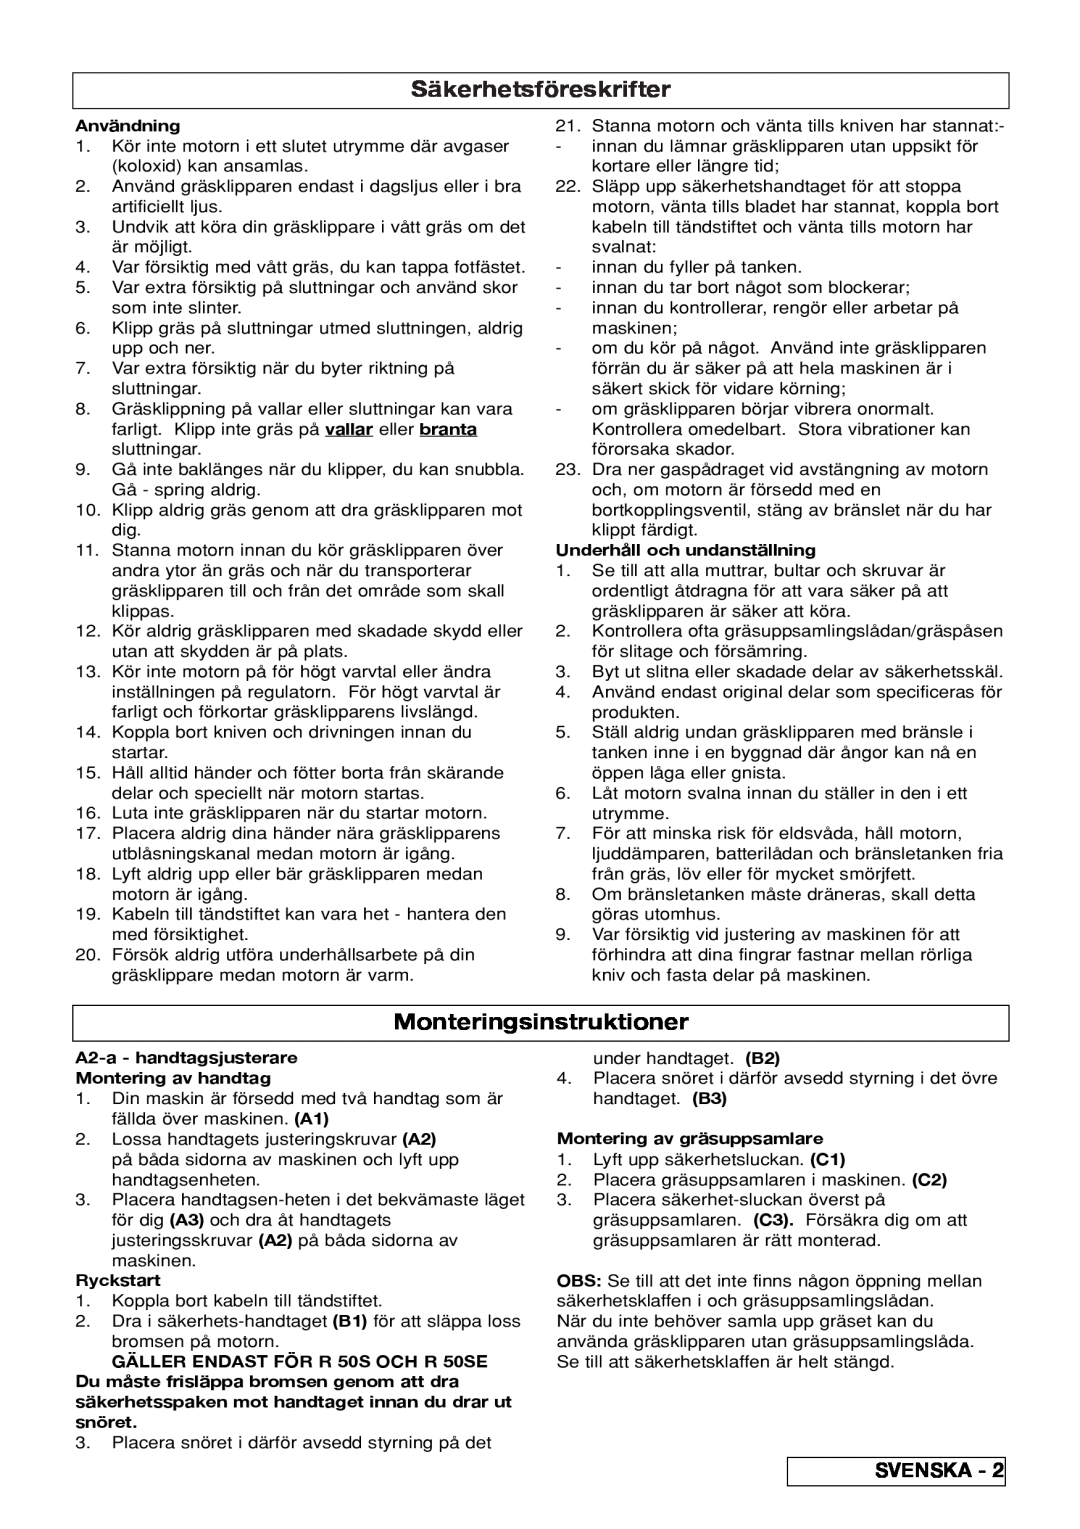 Husqvarna R 50S manual Säkerhetsföreskrifter, Monteringsinstruktioner, Användning, Underhåll och undanställning, Ryckstart 